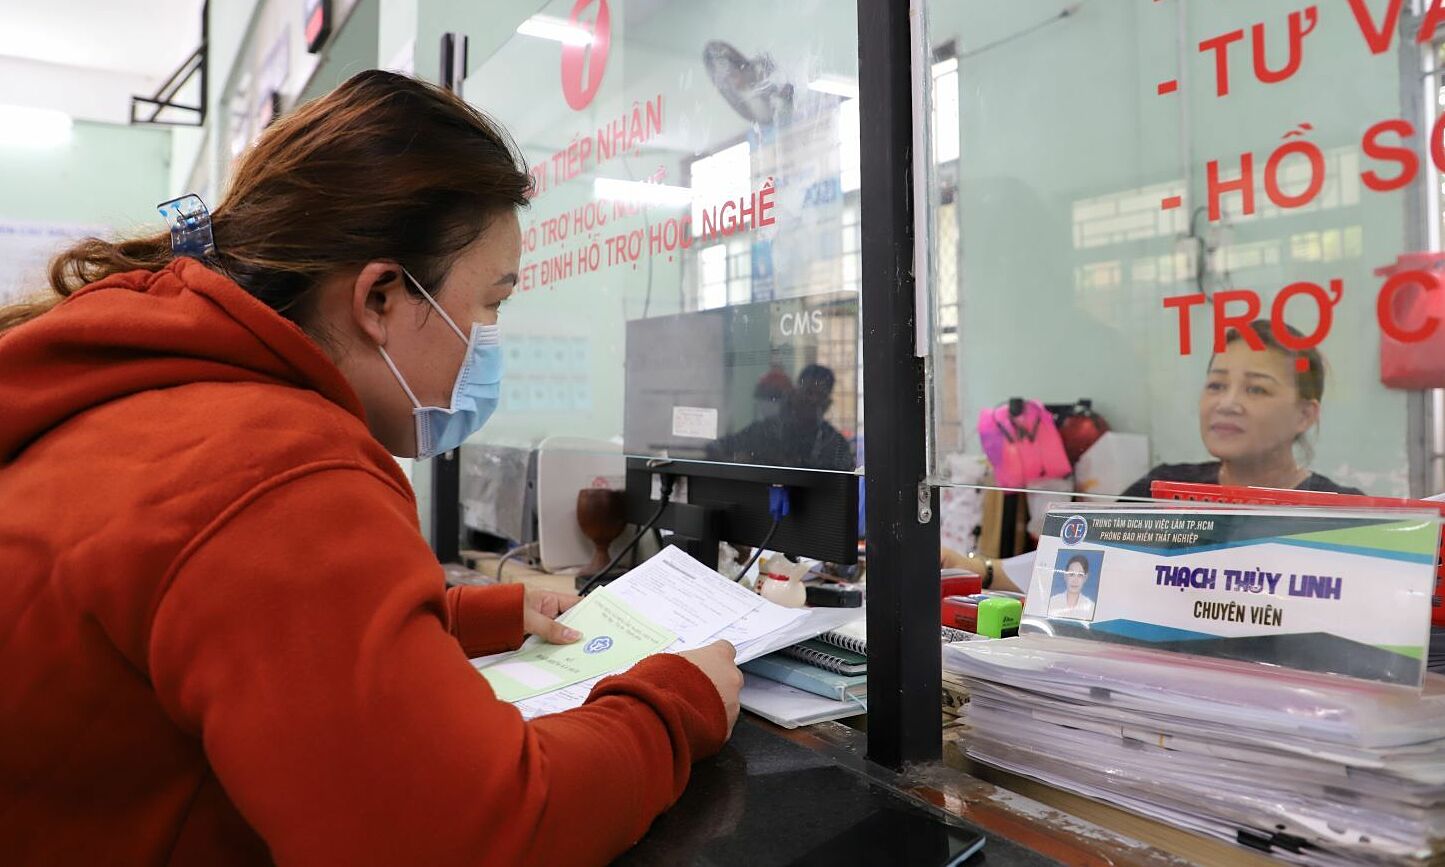 Người lao động gửi hồ sơ cho trung tâm bảo hiểm thất nghiệp 